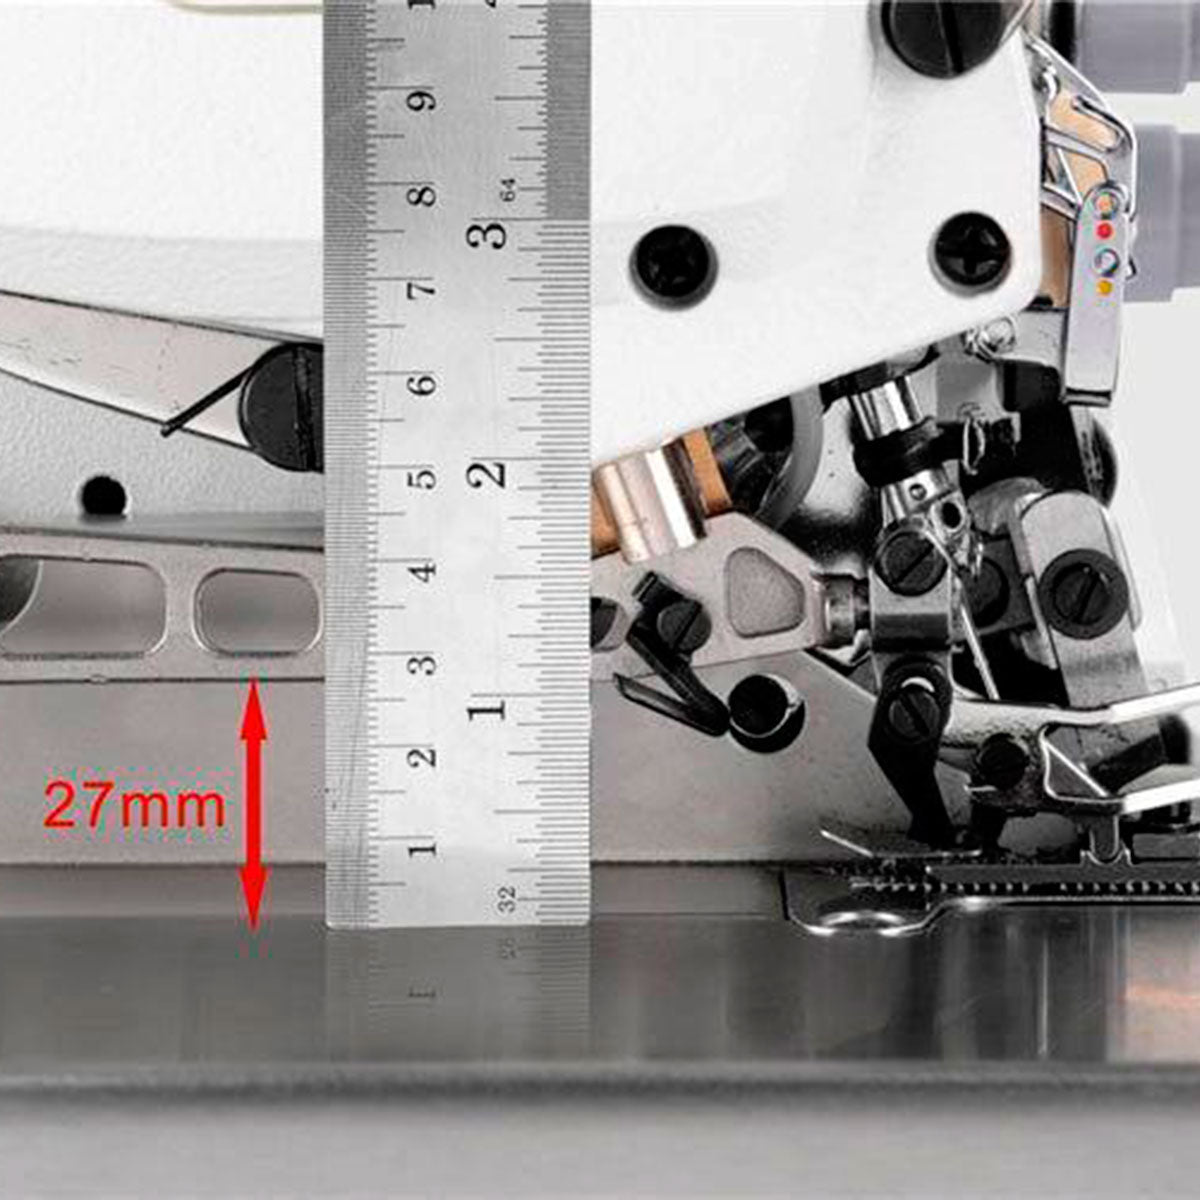 JACK E4S-3-32R2/223 Máquina de coser industrial Overlock de 3 hilos ensamblada con configuración de mesa completamente sumergida incluida